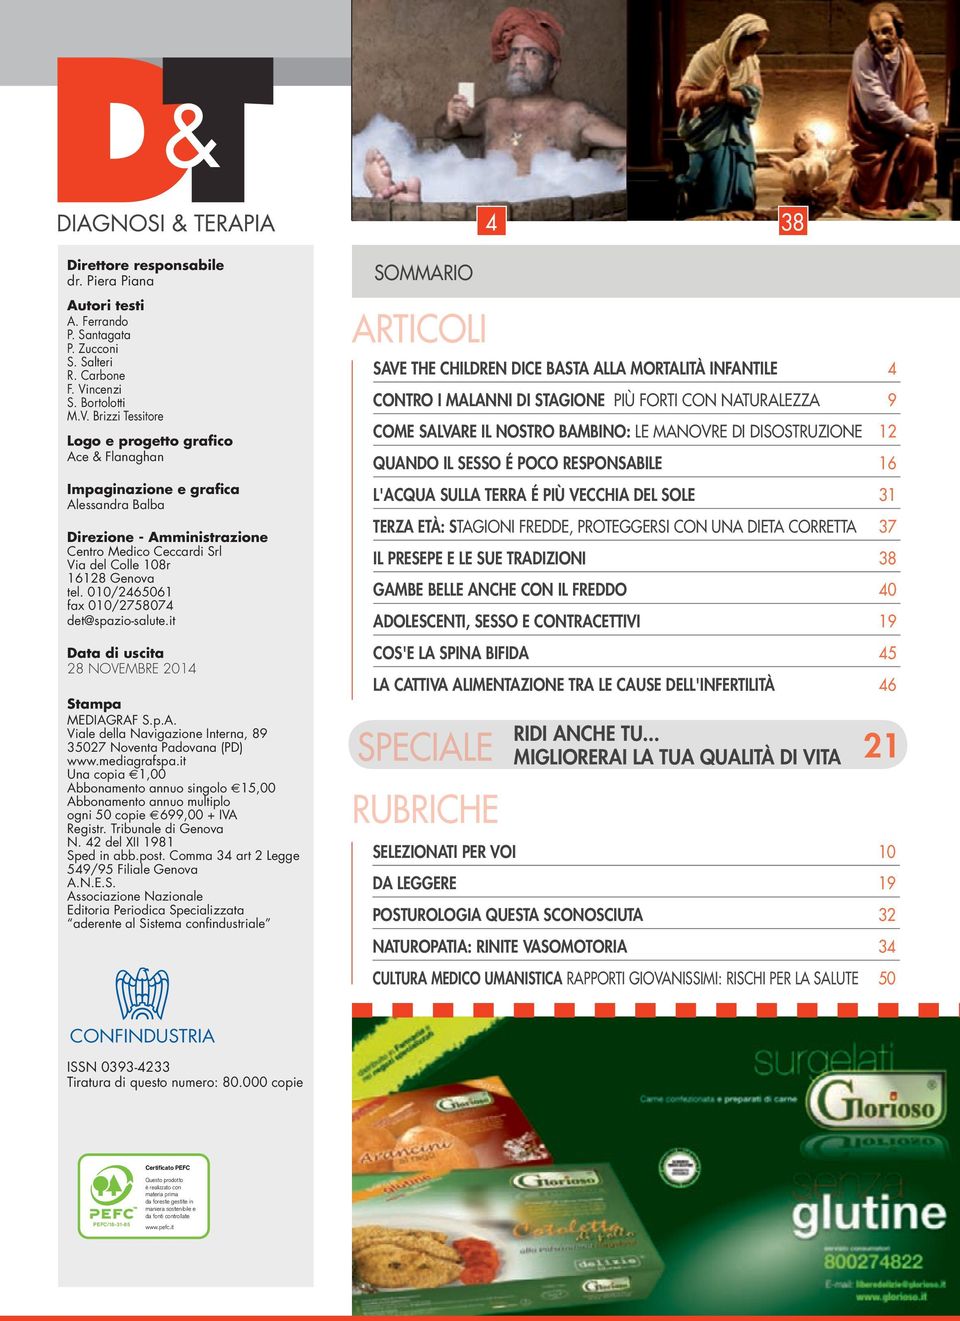 Brizzi Tessitore Logo e progetto grafico Ace & Flanaghan Impaginazione e grafica Alessandra Balba Direzione - Amministrazione Centro Medico Ceccardi Srl Via del Colle 108r 16128 Genova tel.